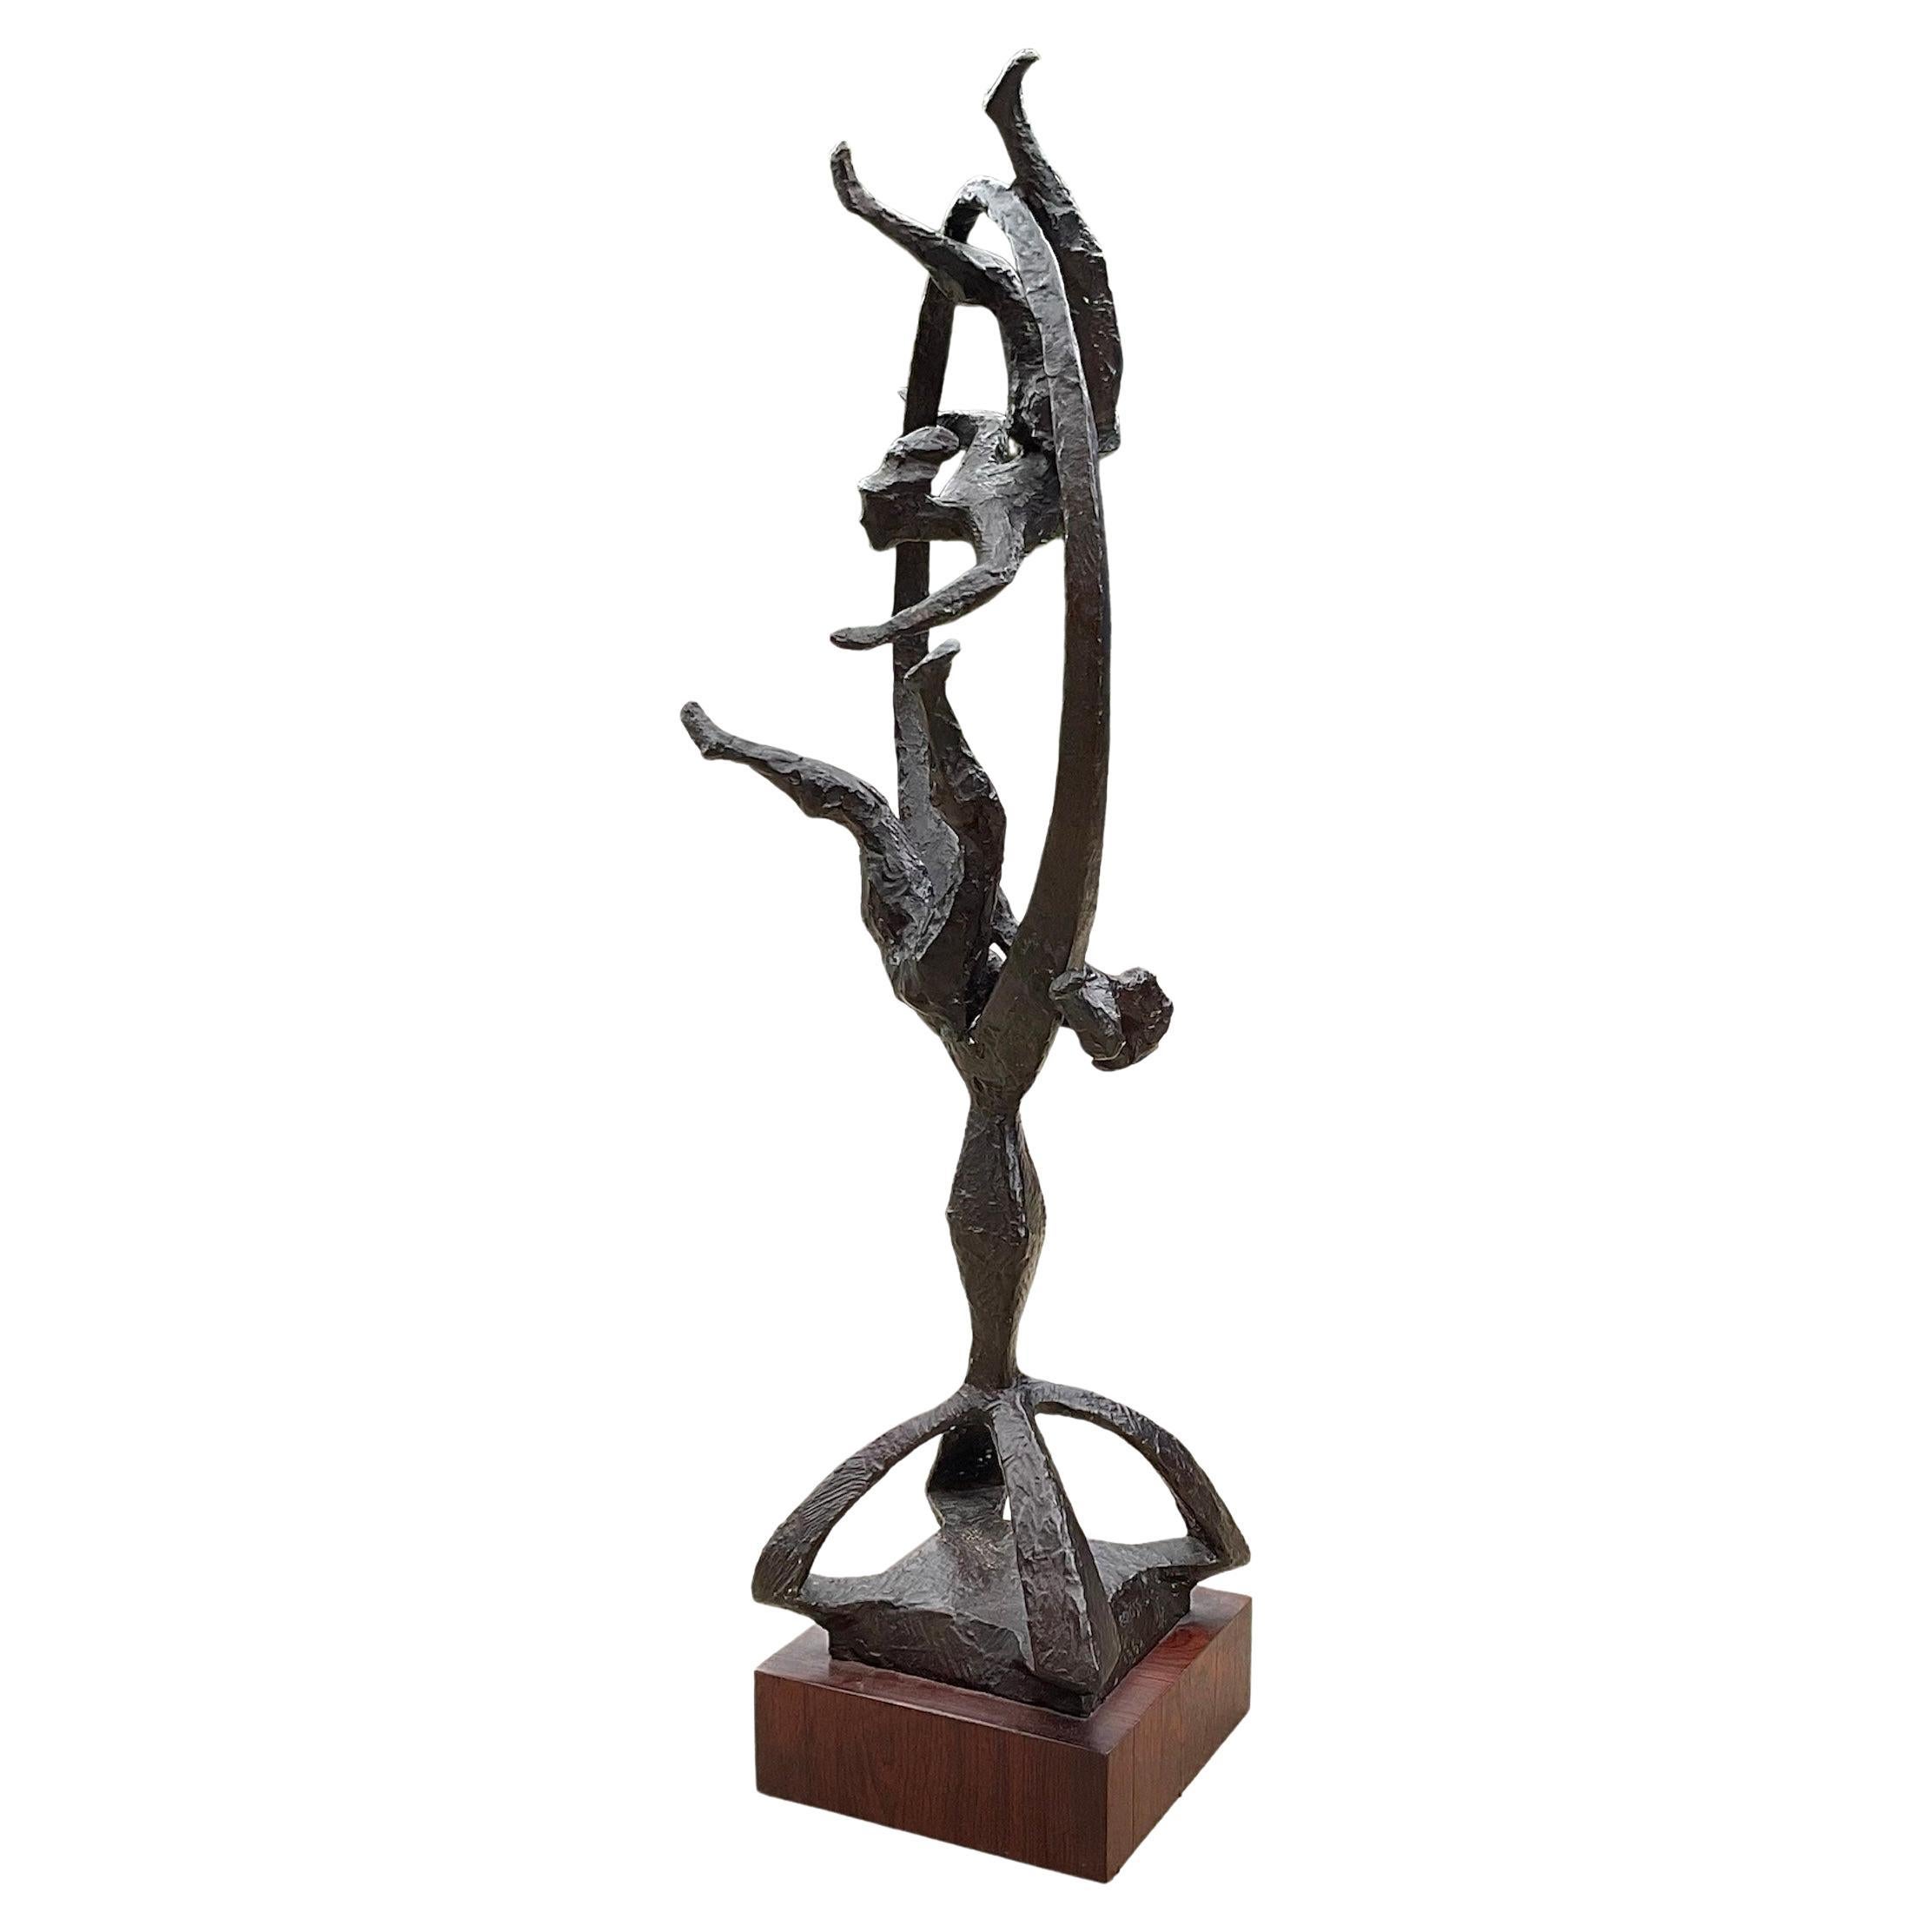 Grande sculpture d'acrobates de Chaim Gross signée et datée de 1964 